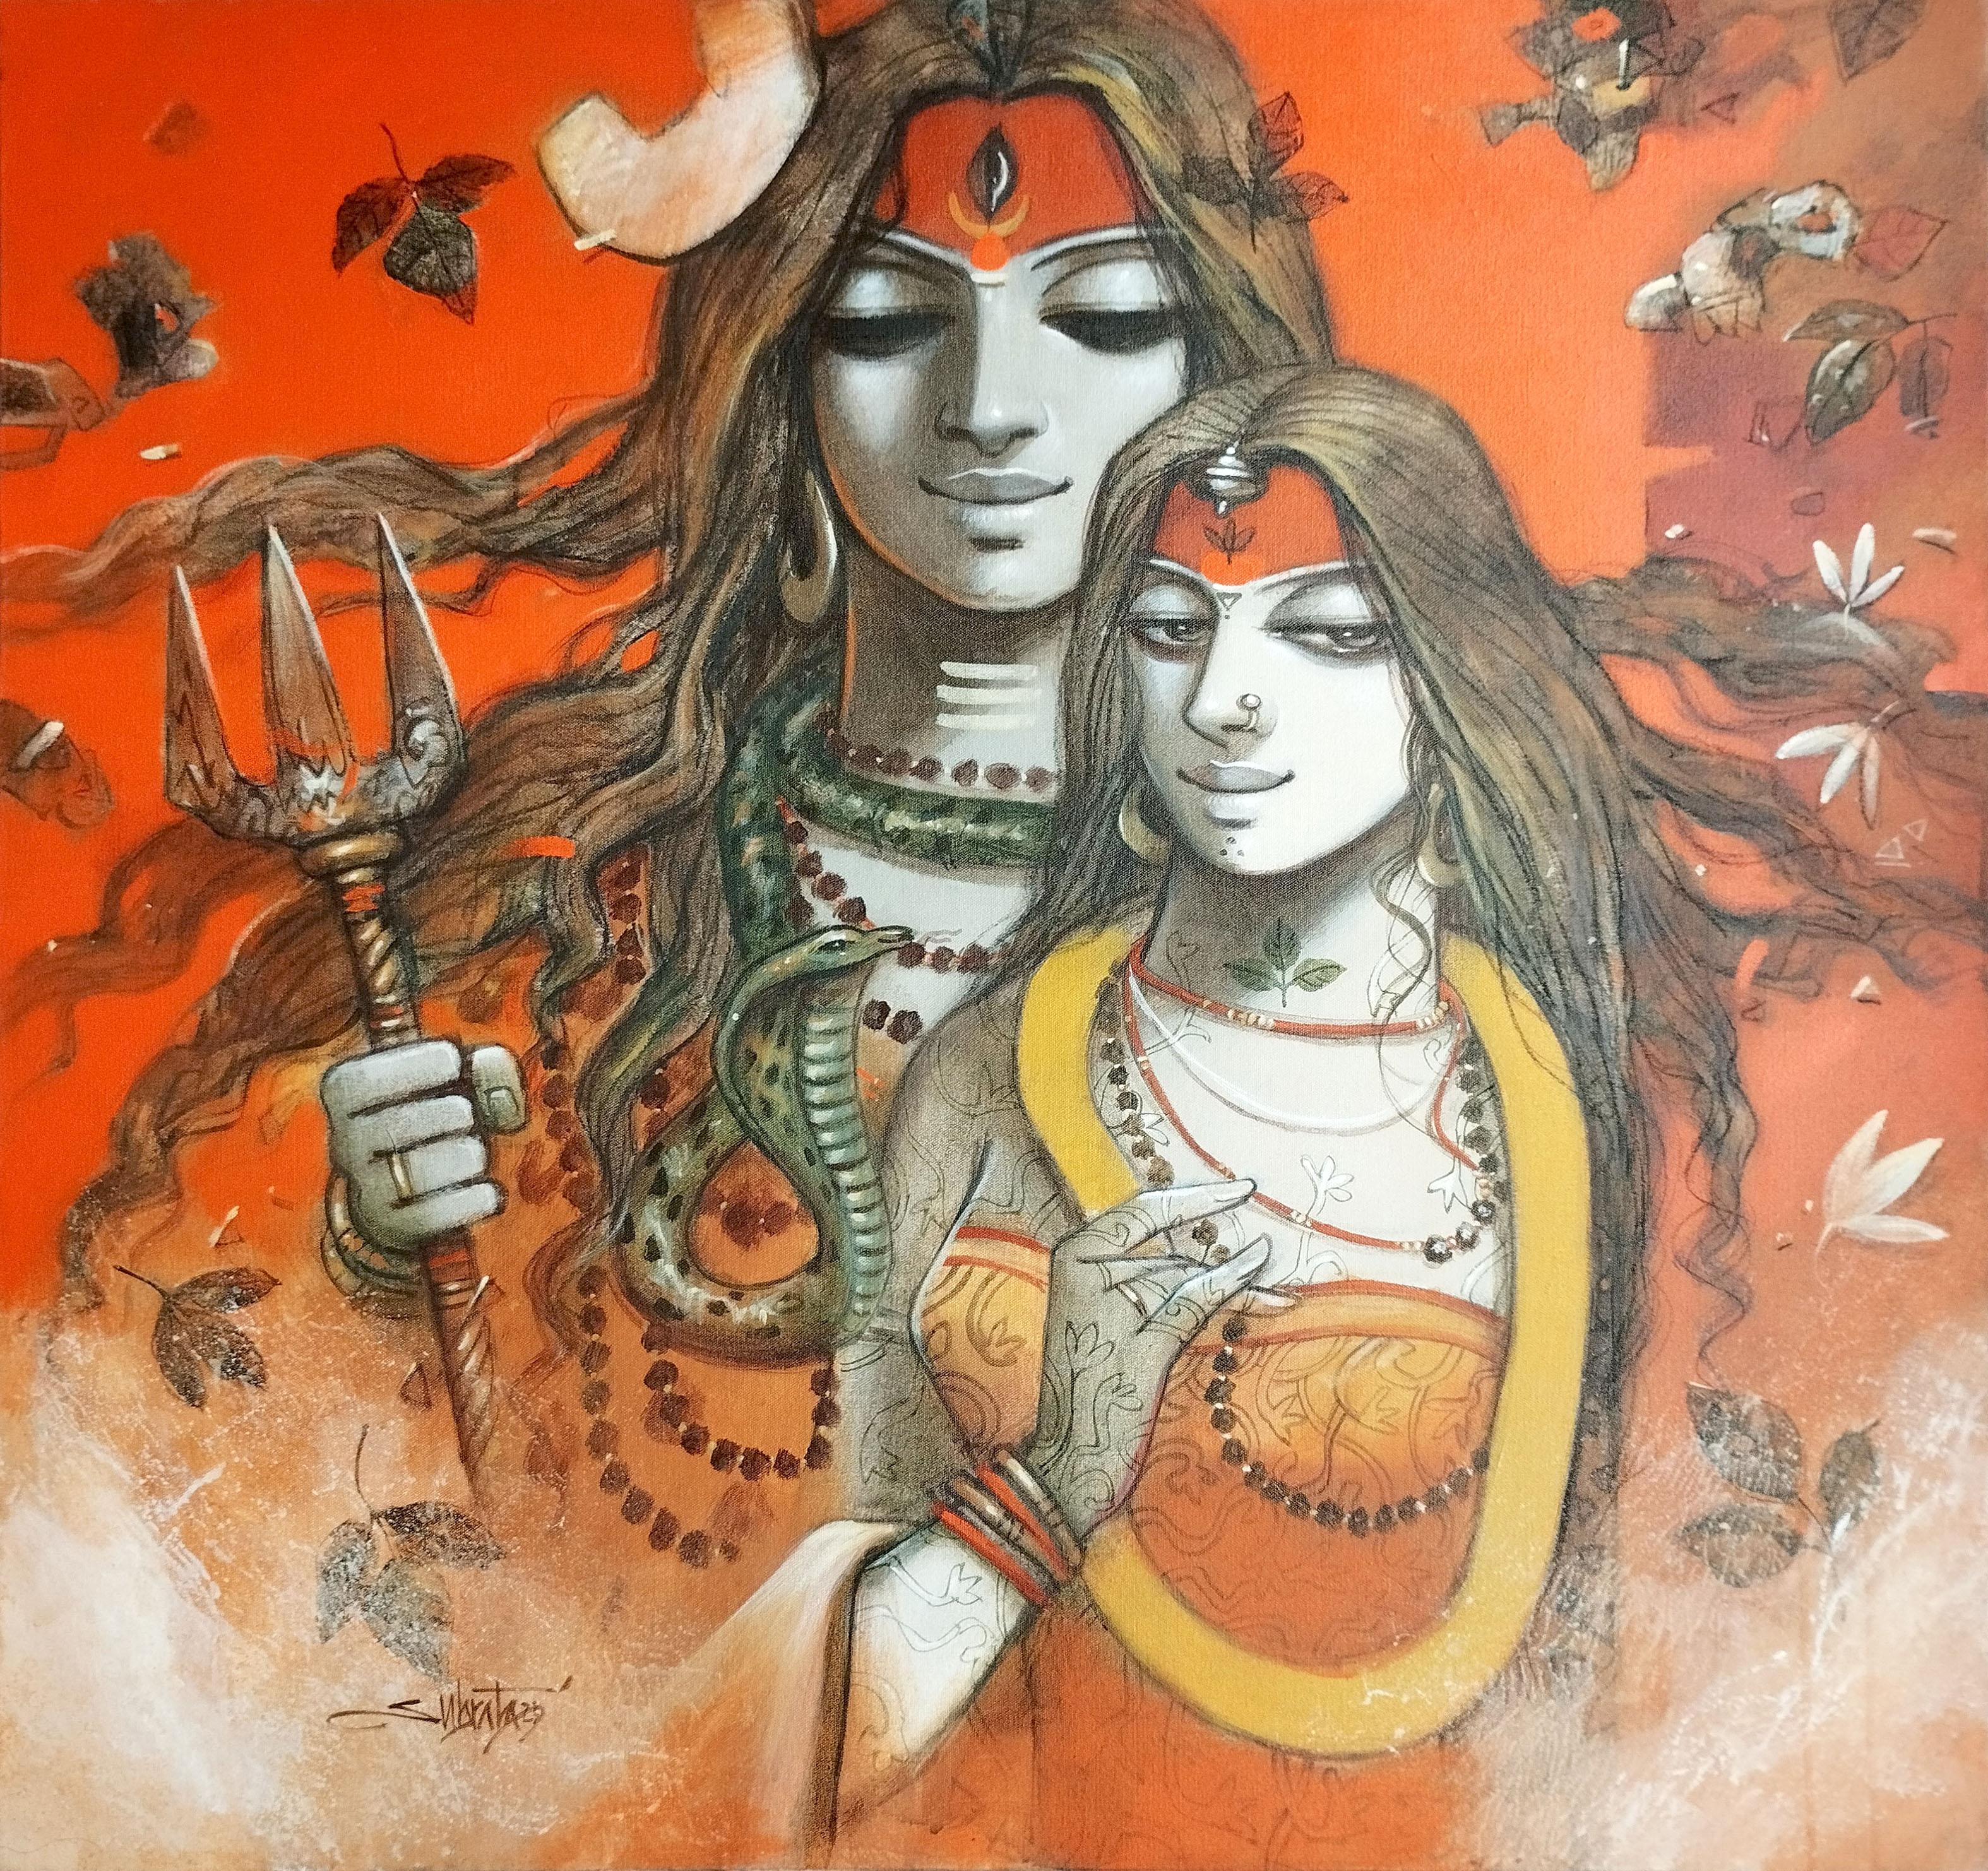 Portrait Painting Subrata Das - Shiva Parvati, acrylique sur toile par Contemporary, rouge, jaune, blanc, en stock